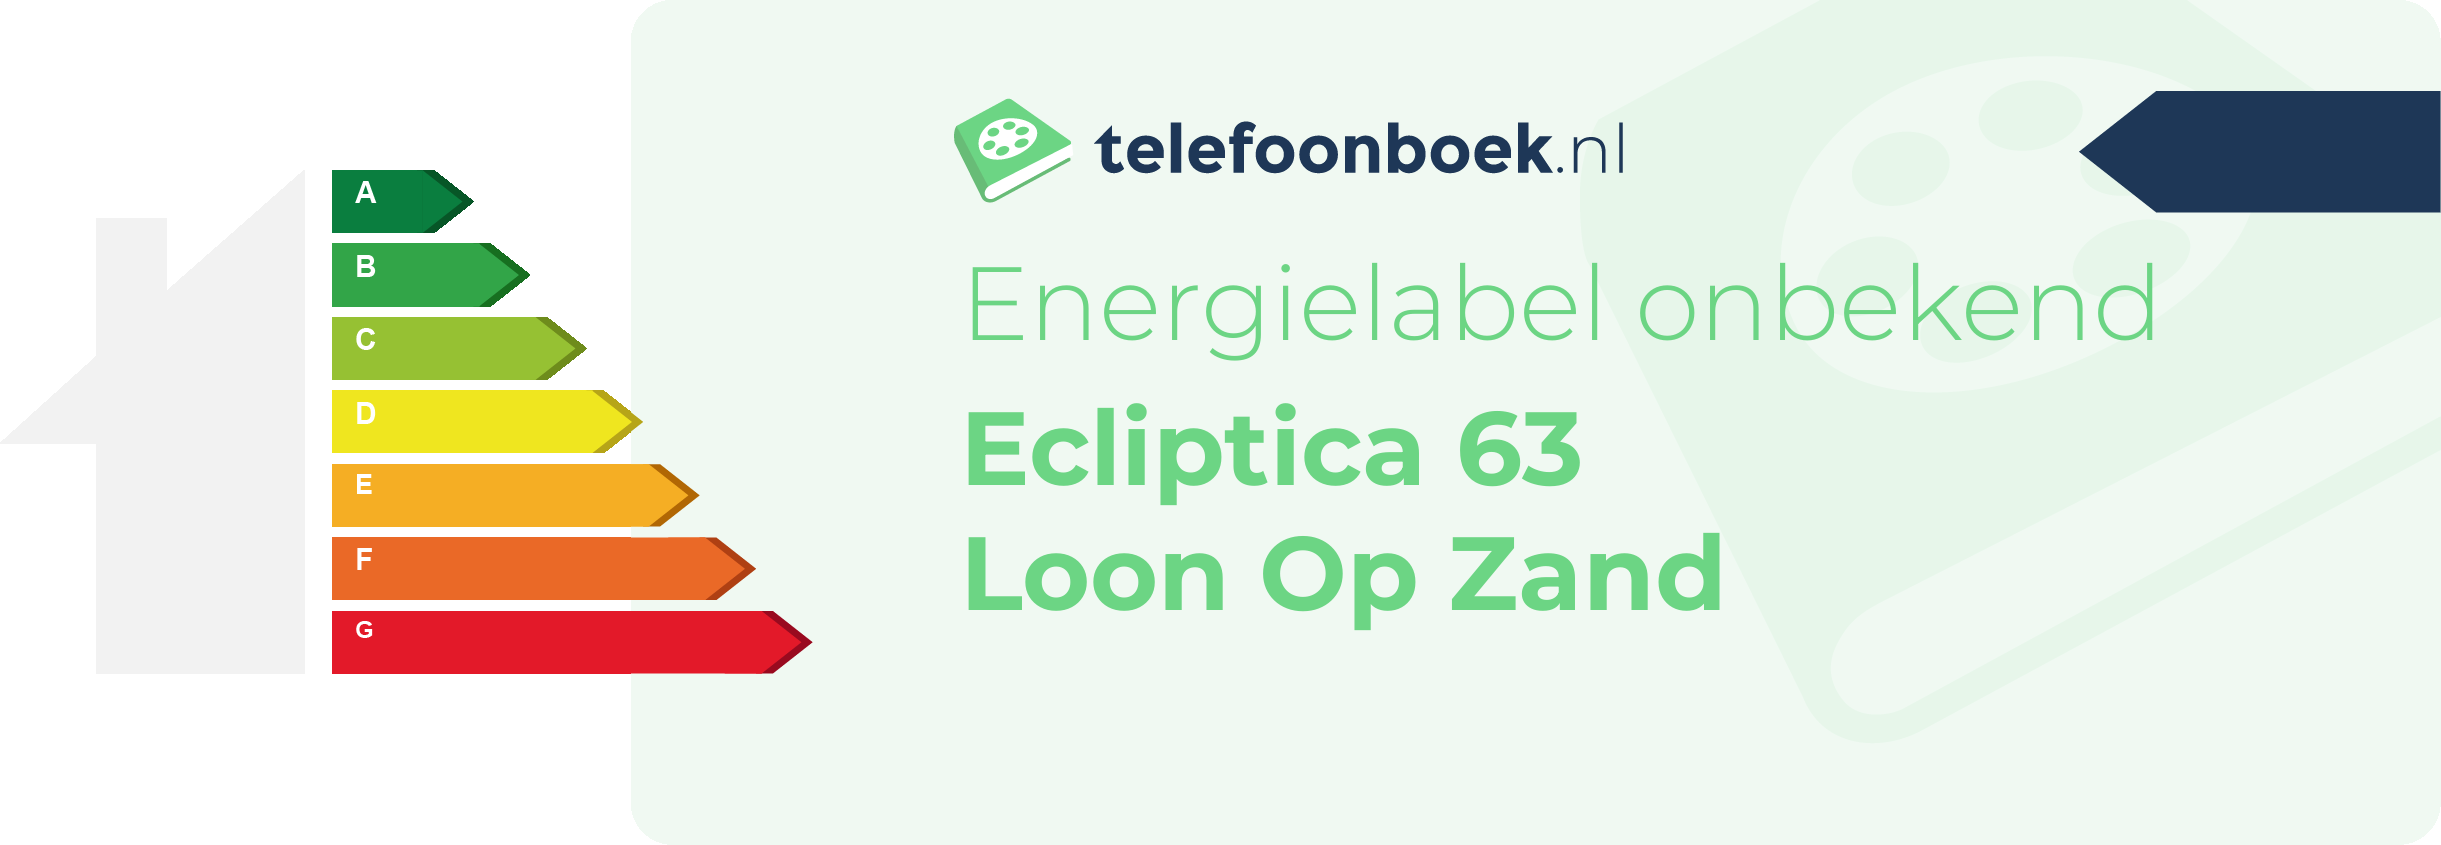 Energielabel Ecliptica 63 Loon Op Zand